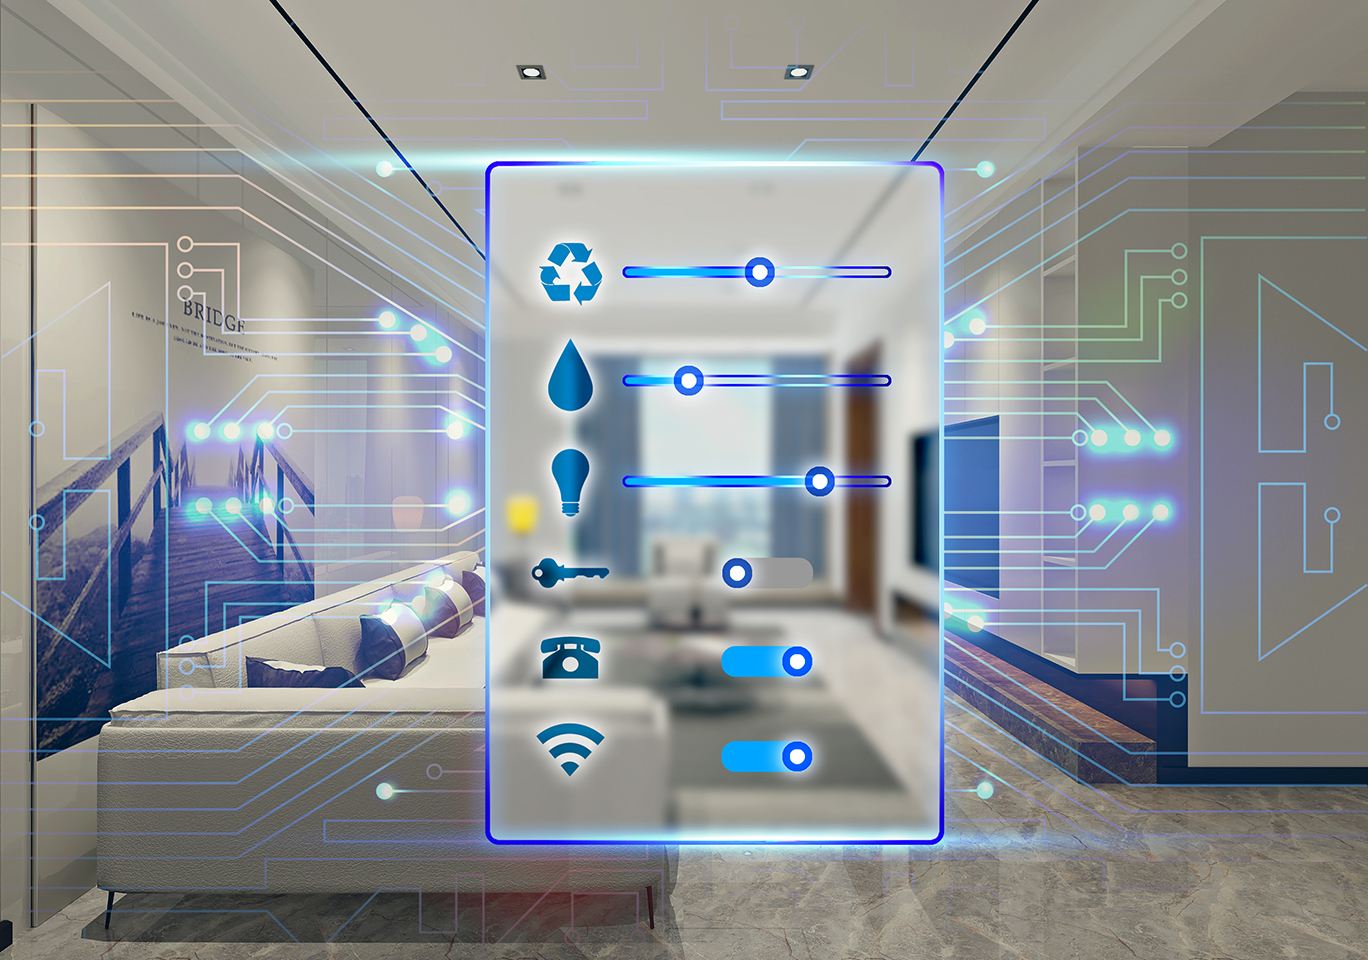 客房智能控制系统让酒店变得更加智能化